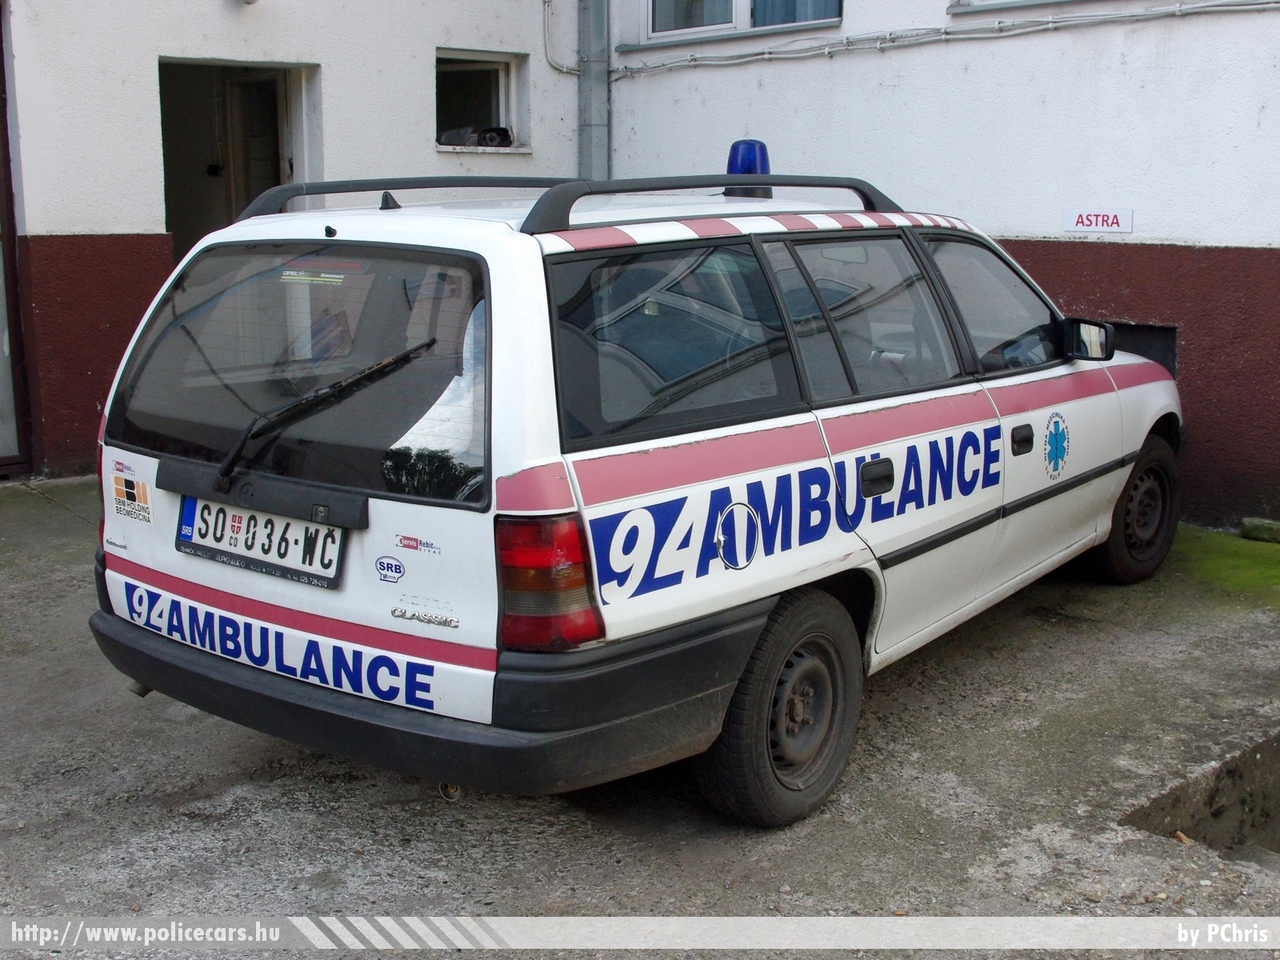 Opel Astra F Caravan, fotó: PChris
Keywords: szerb Szerbia mentő mentőautó Serbia serbian ambulance